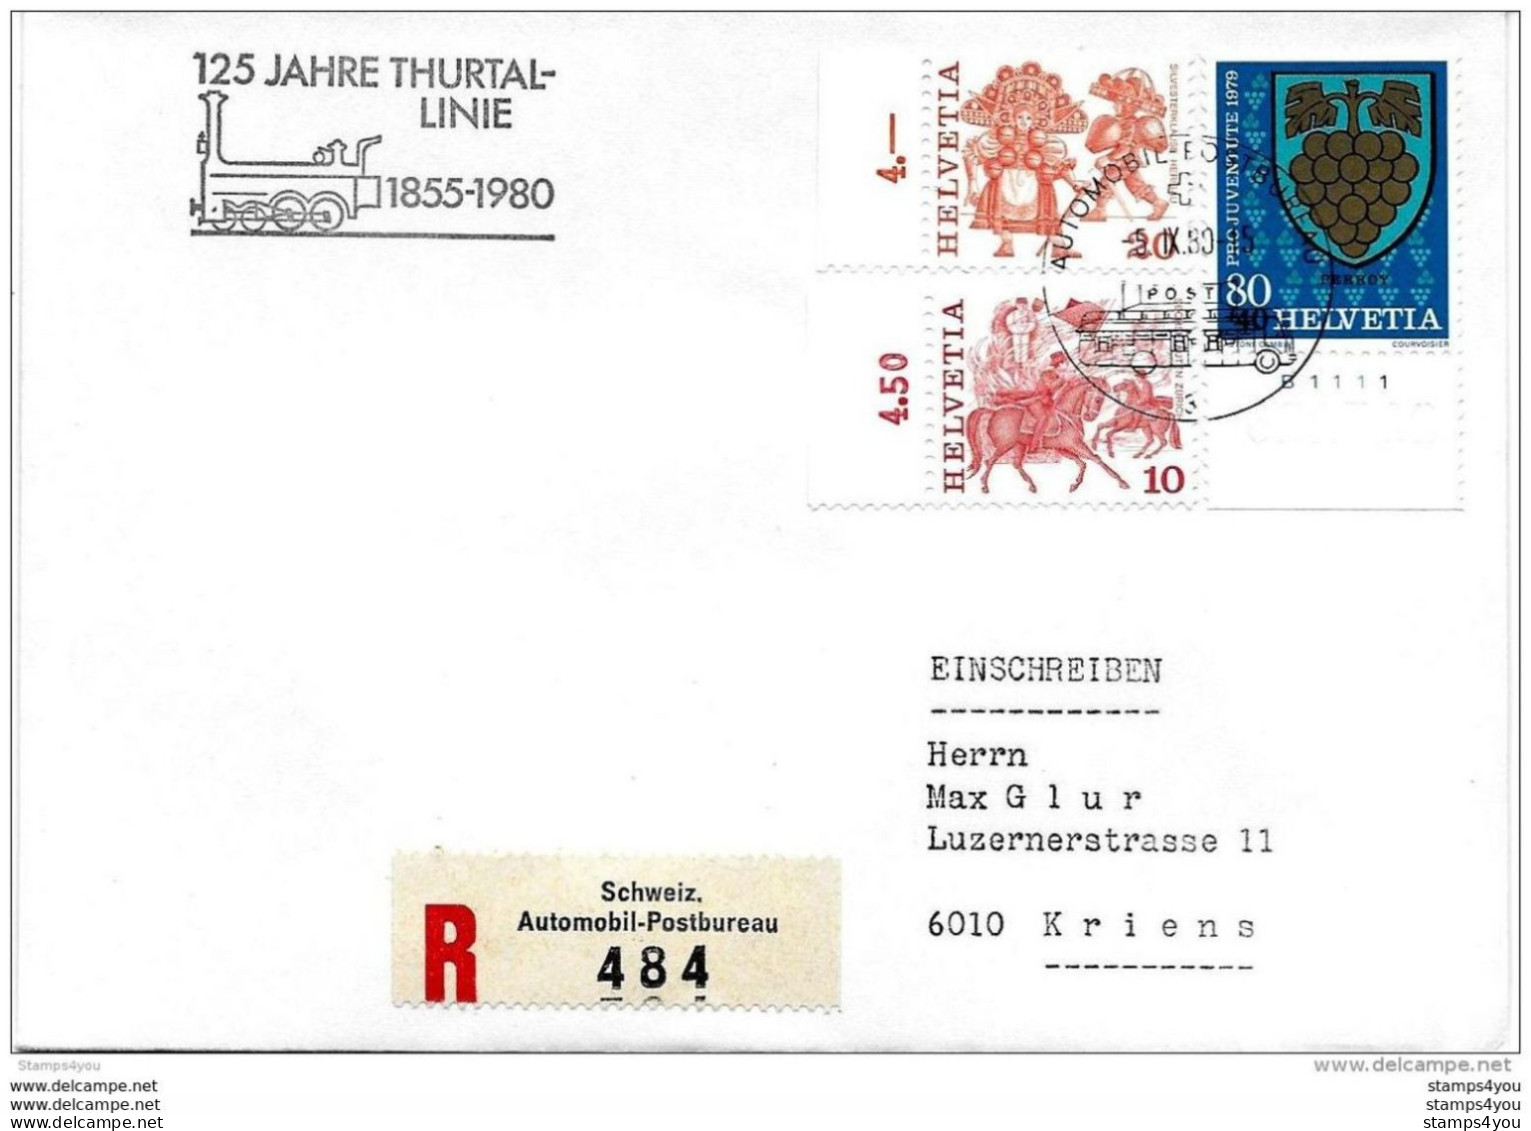 228 - 77 -  Enveloppe Suisse Recommandée Avec Oblit Spéciale "125 Jahre Thurtal-linie 1980" - Trenes